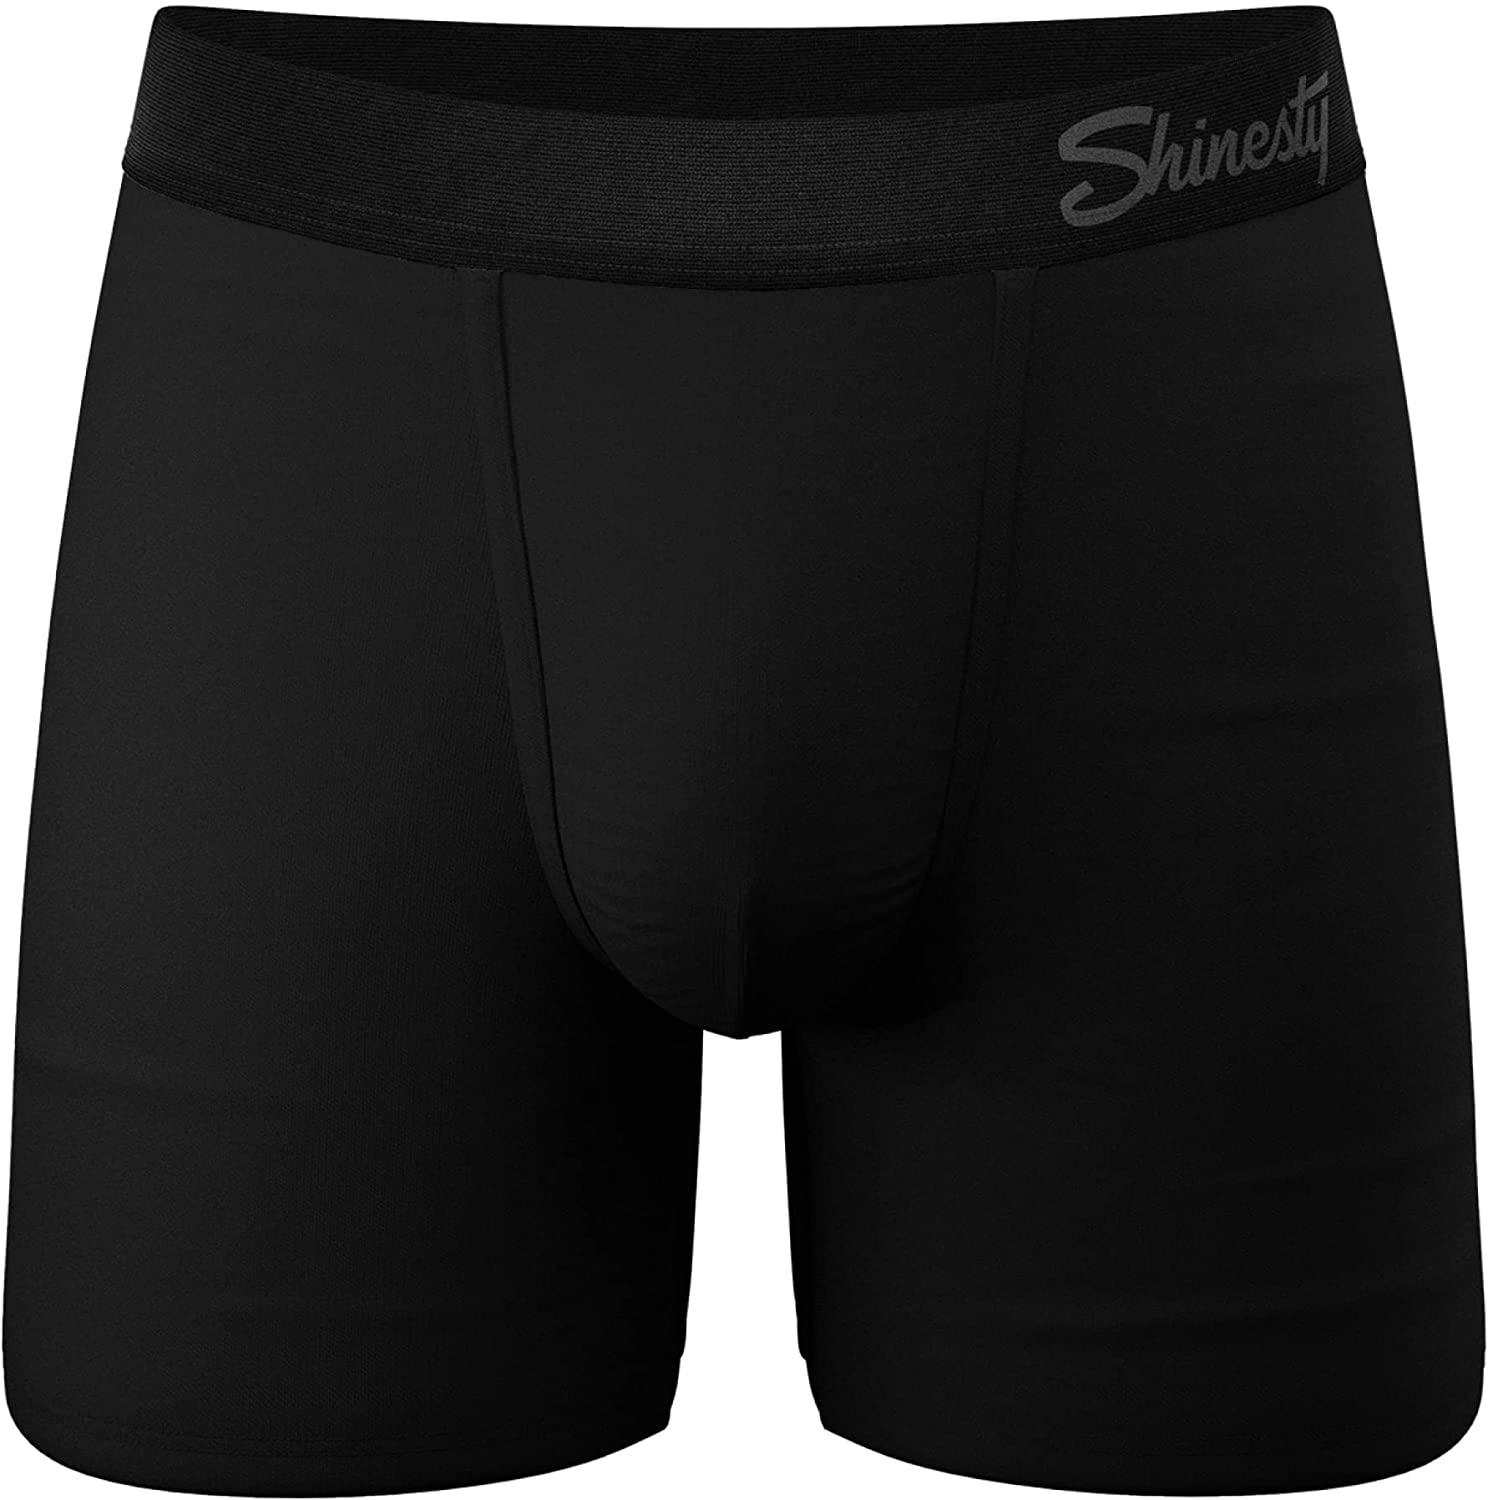  Shinesty Hammock Support Pouch Underwear For Men